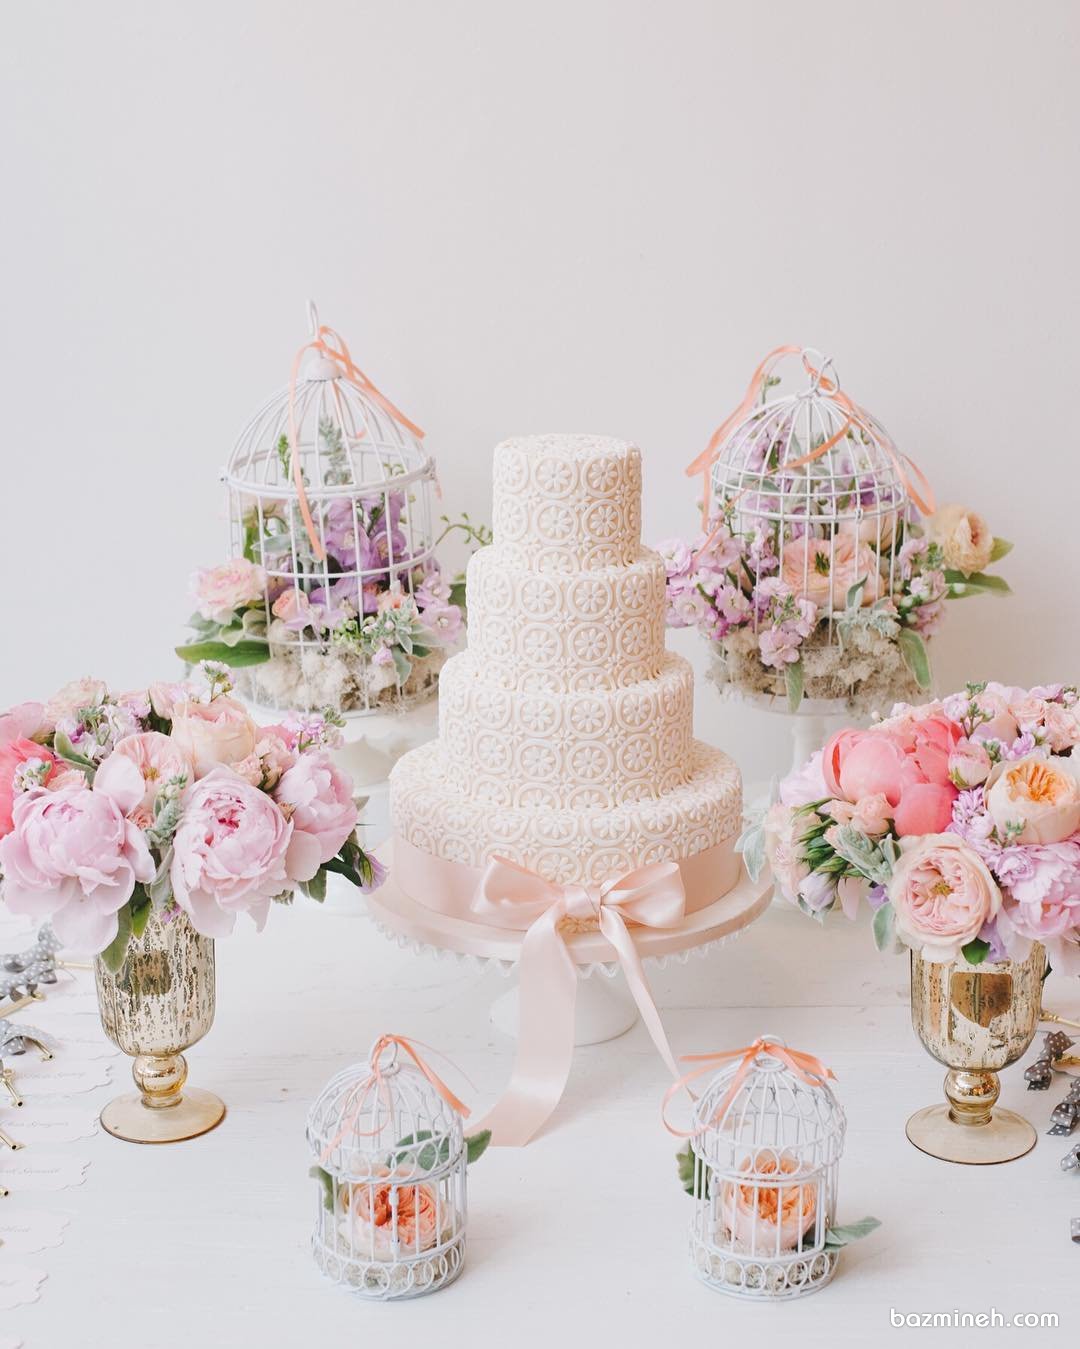 کیک چند طبقه شیک و زیبا با طرح تور پاپیون دار مناسب برای جشن نامزدی یا عروسی 